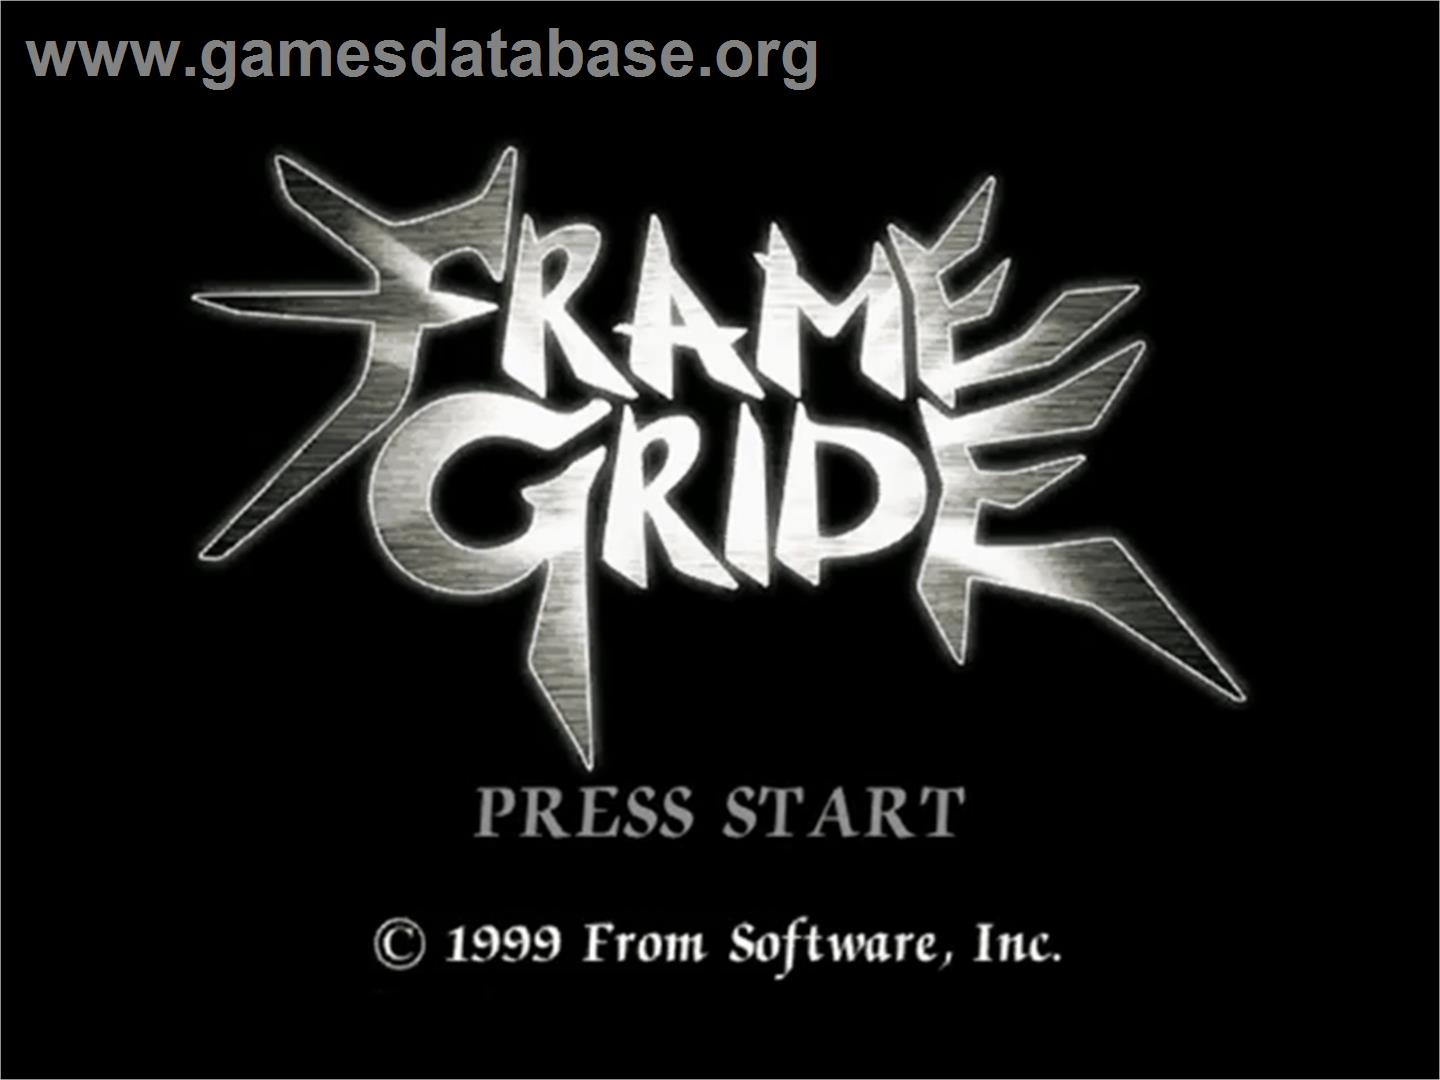 Frame Gride - Sega Dreamcast - Artwork - Title Screen